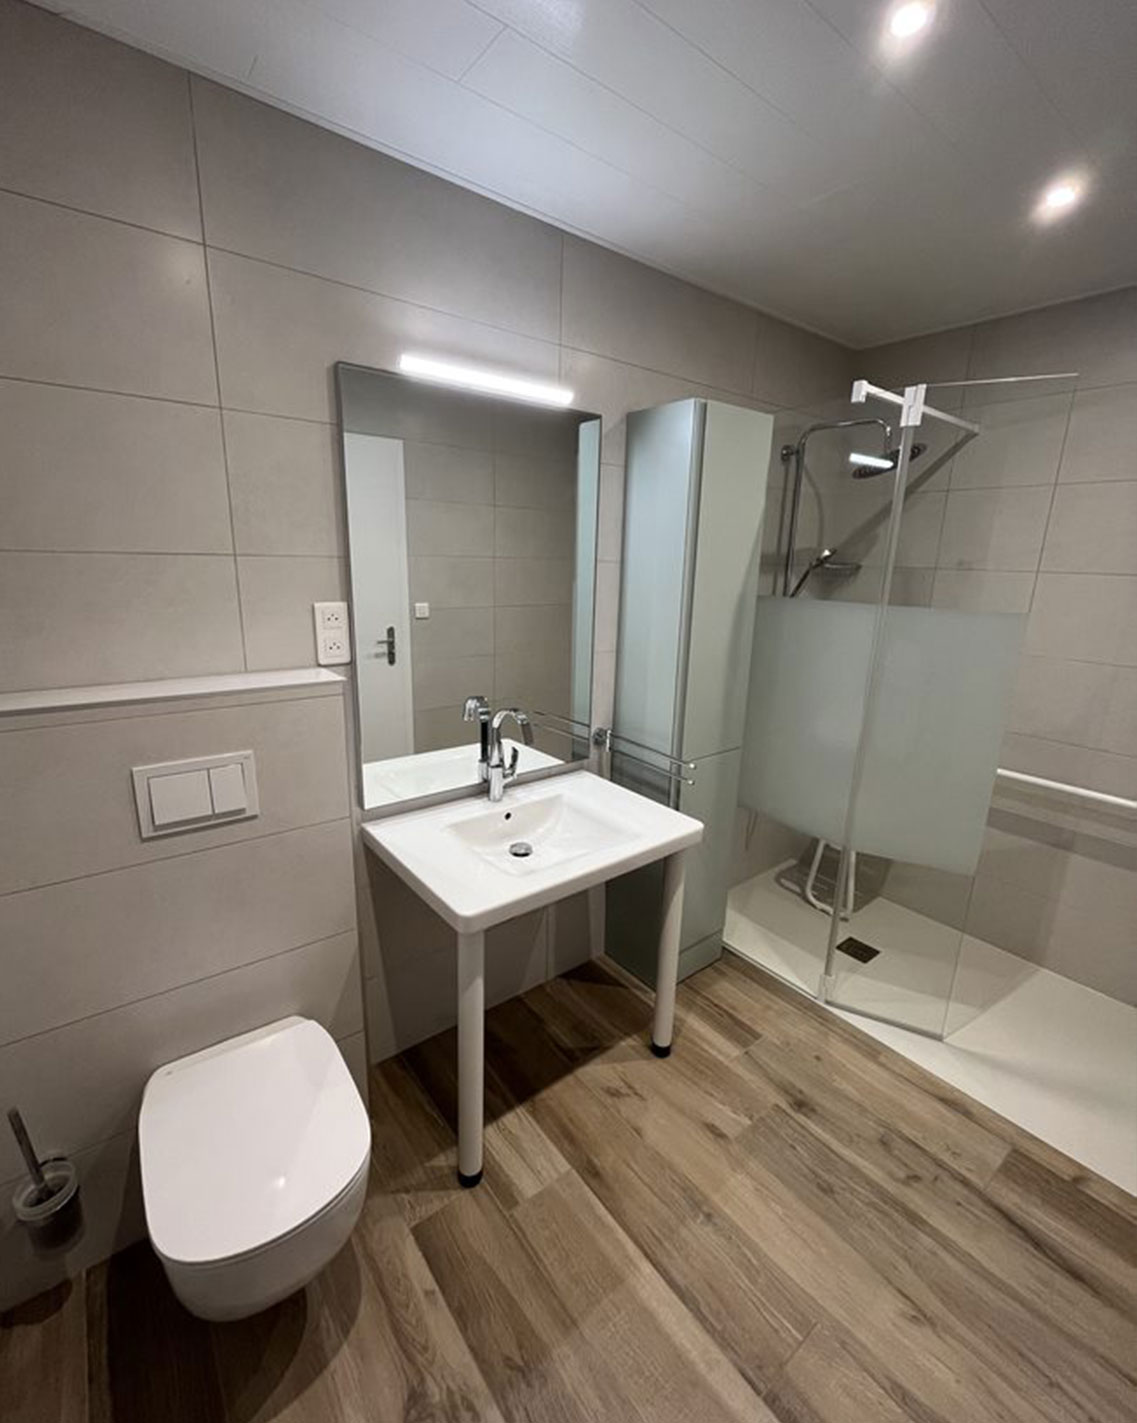 projet renovation salle bain douche sol vasque mobilier Myotte Ochamps Vennes apres